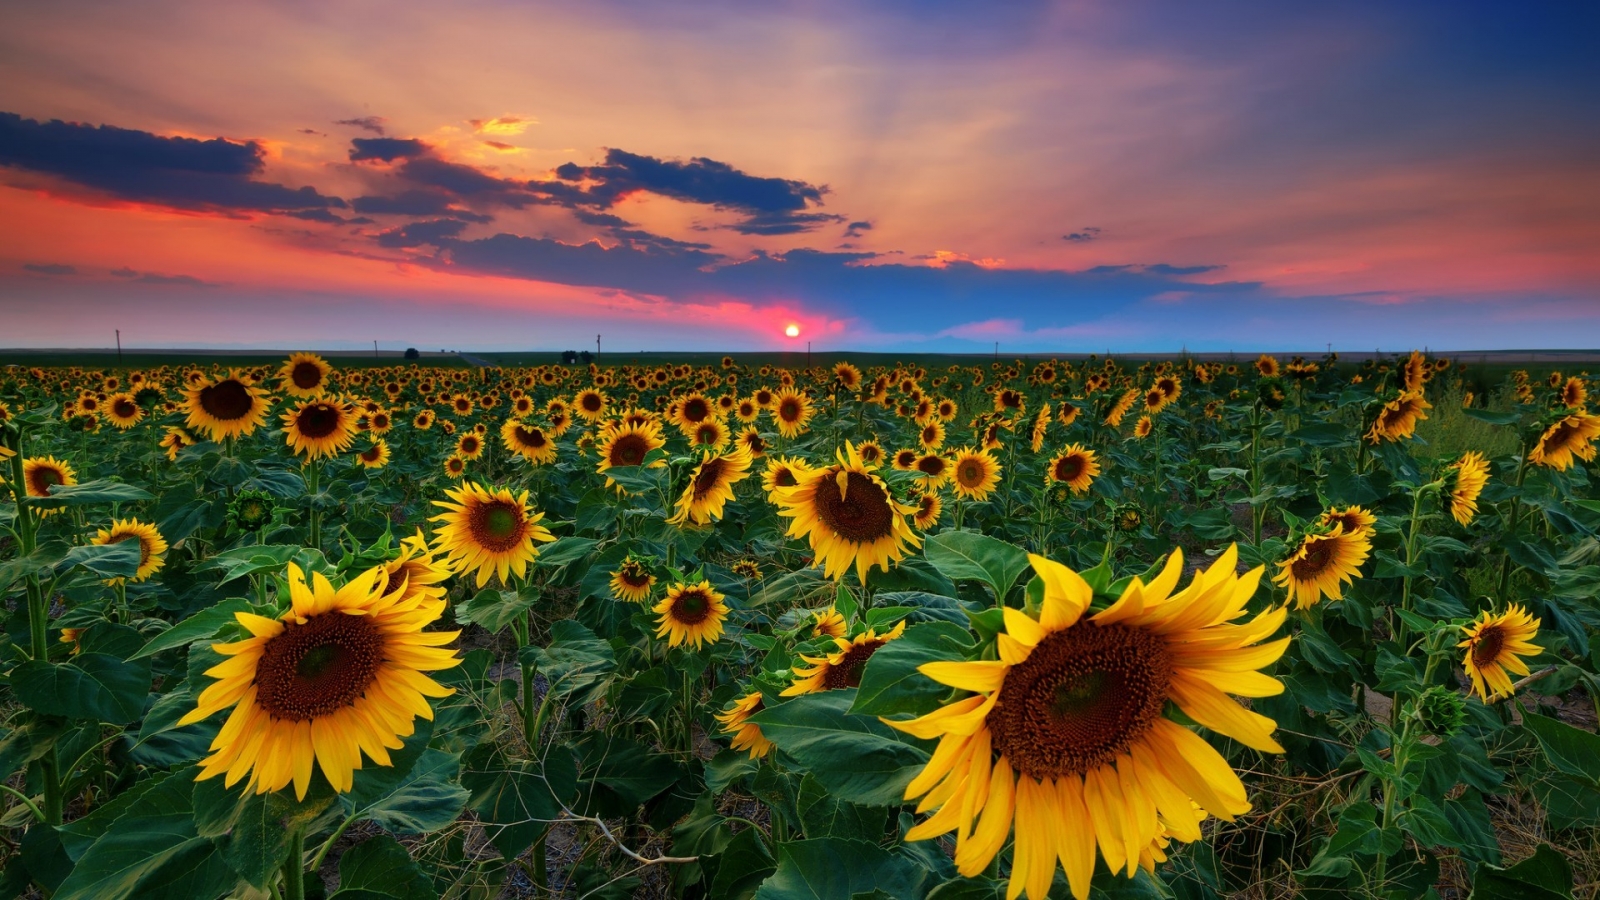 Denver Sunflowers Field for 1600 x 900 HDTV resolution